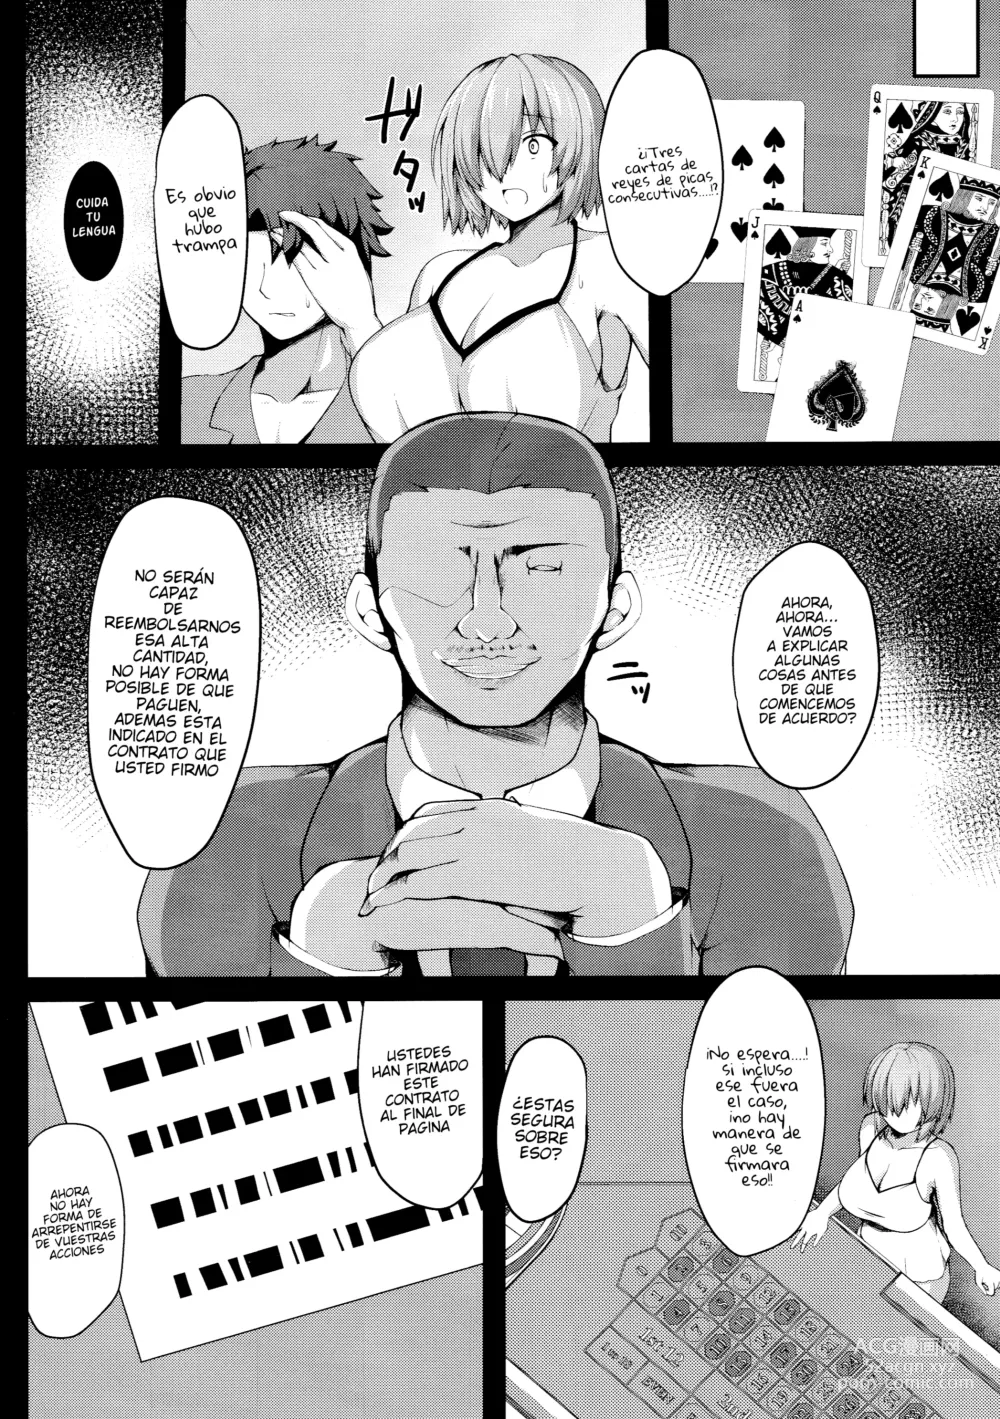 Page 3 of doujinshi Sexo en el casino con mash para pagar su deuda